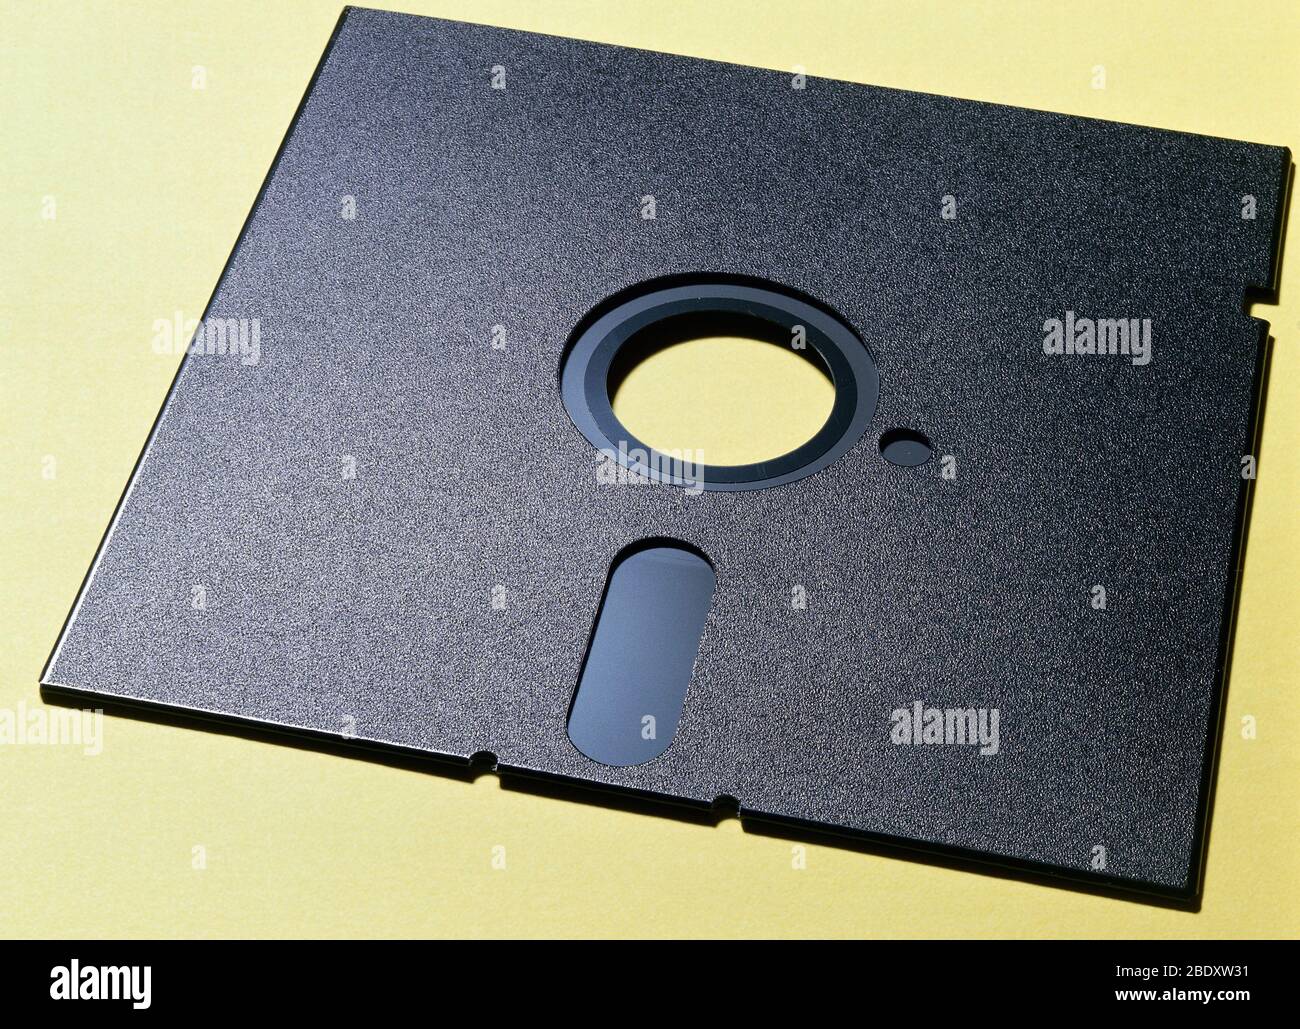 Floppy Disc Stock Photo